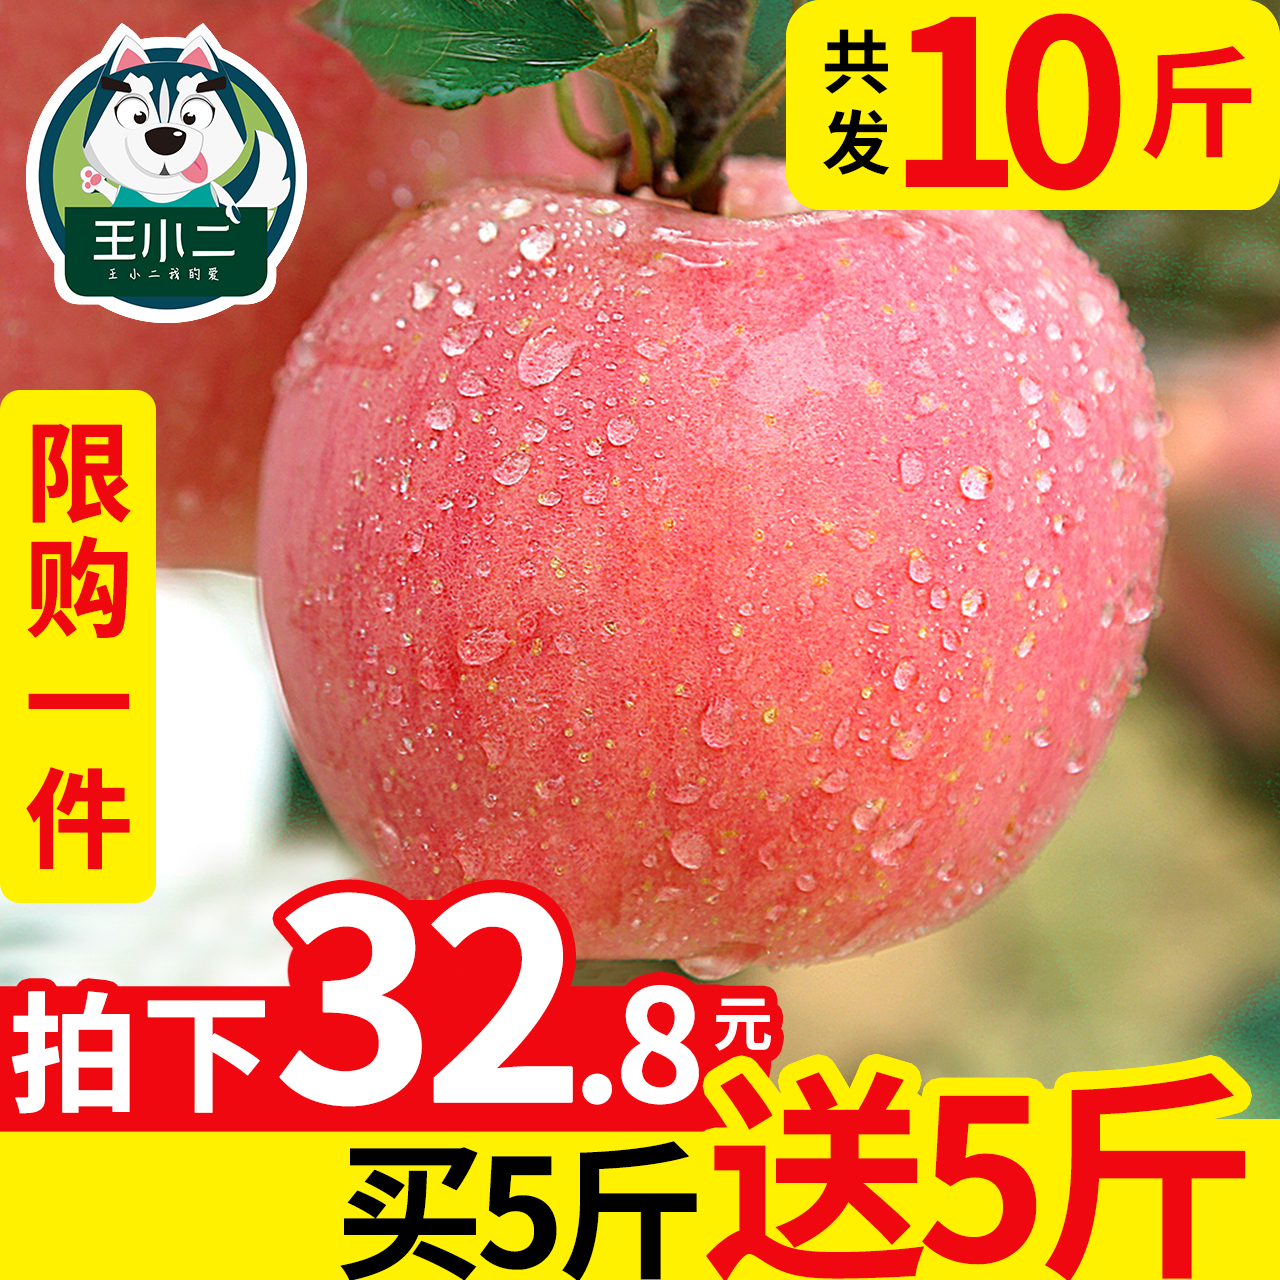 【买一送一】红富士苹果水果10斤新鲜包邮当季丑苹果整箱吃的平果